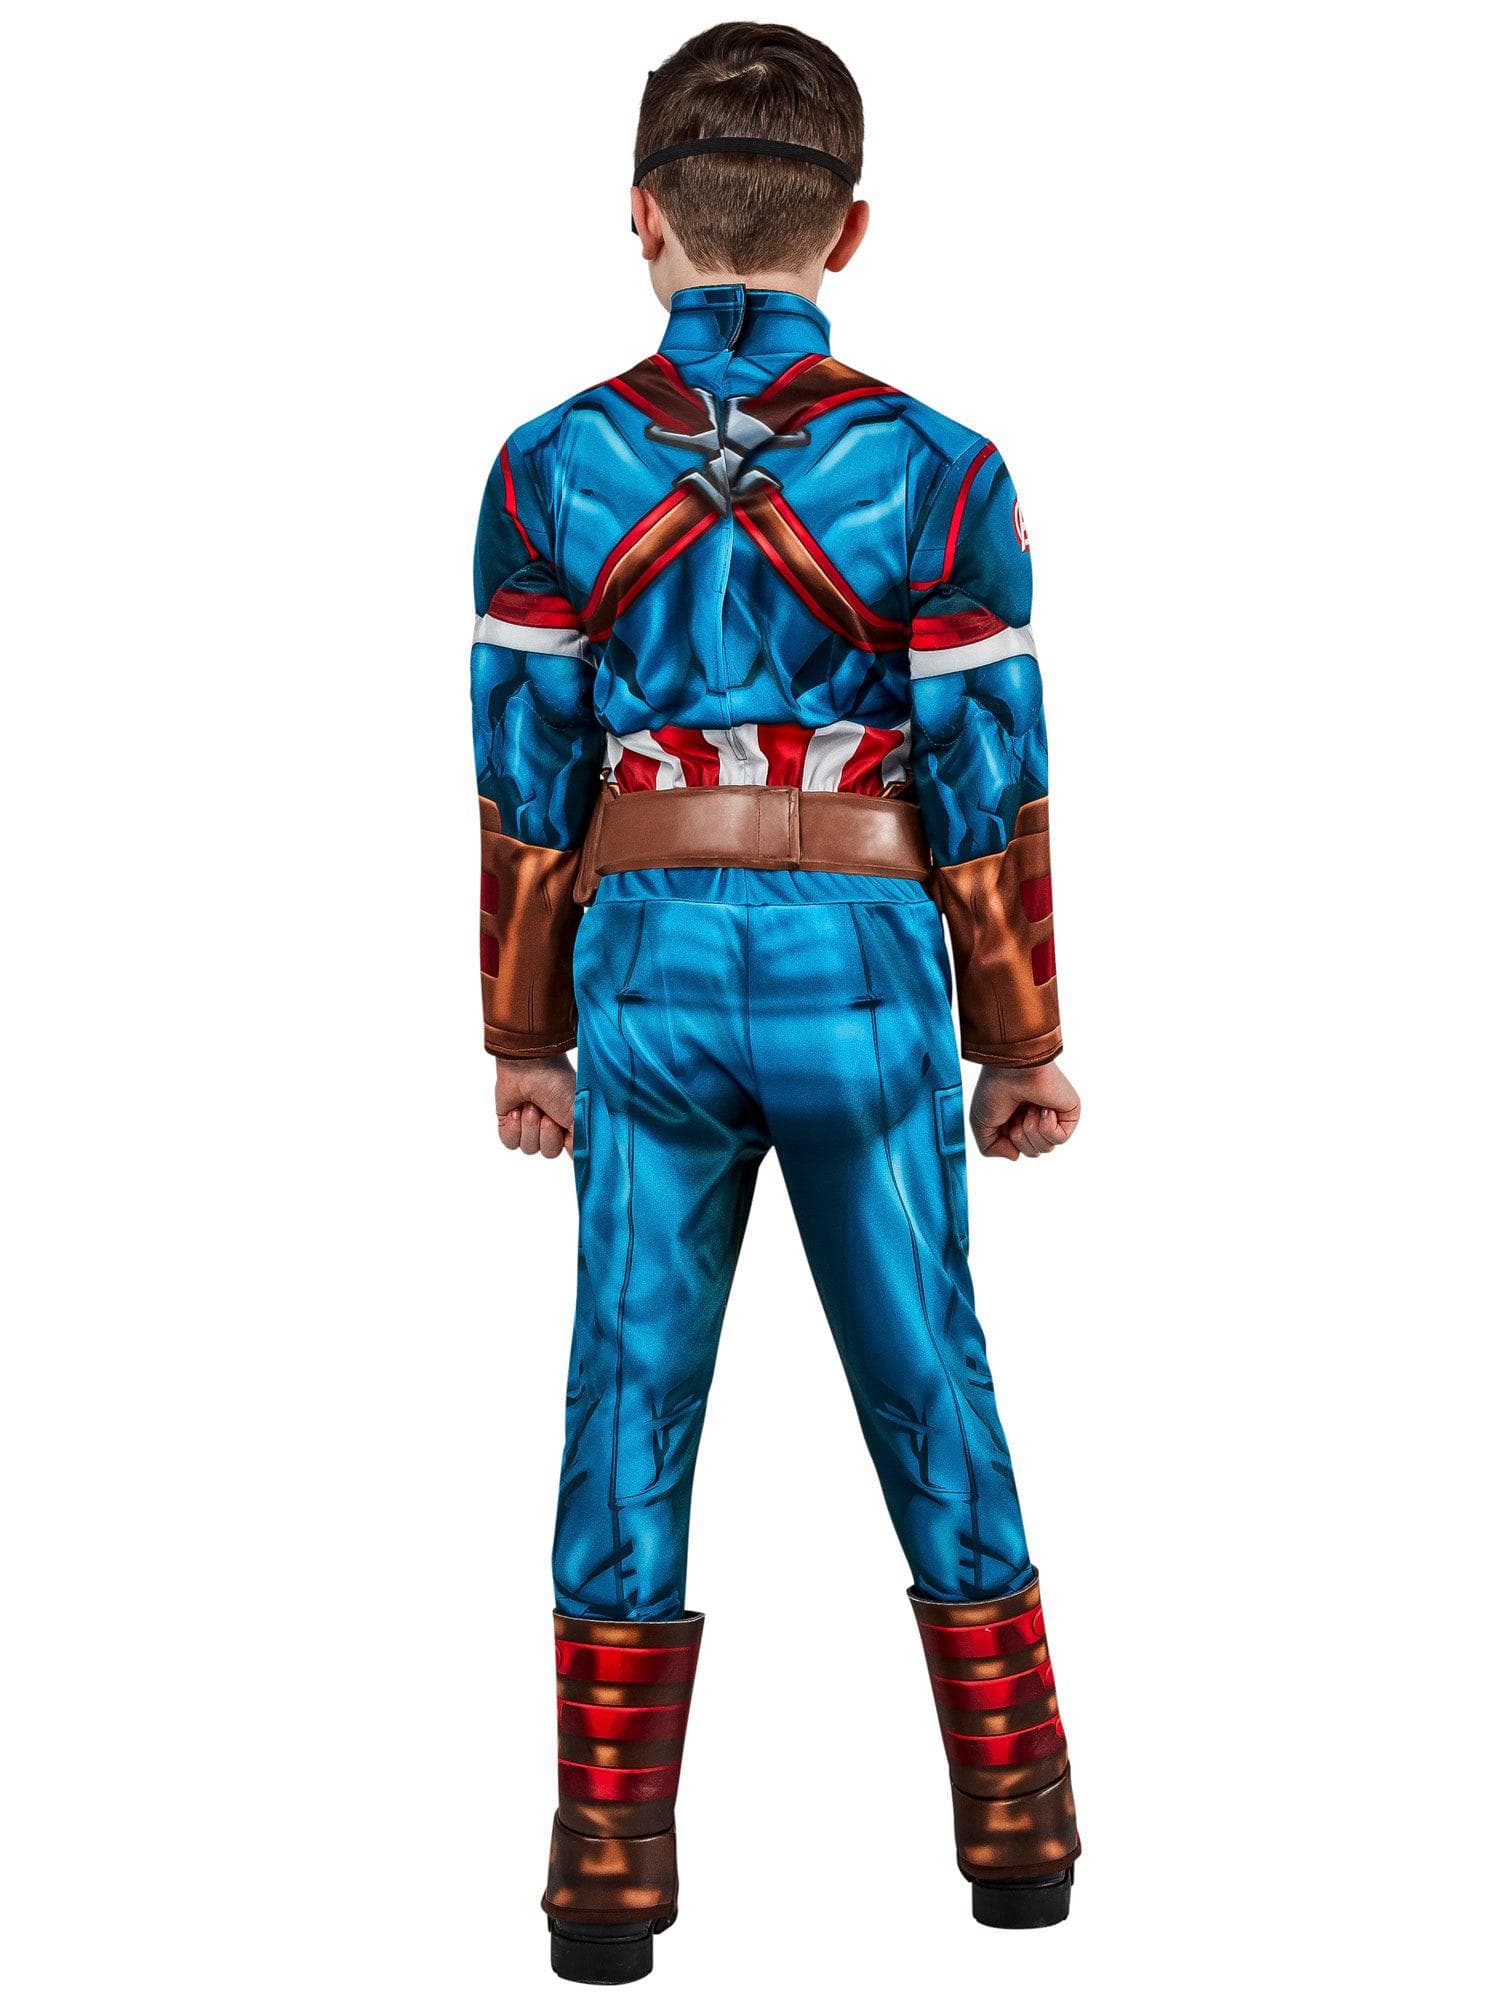 Captain America Child Costume - costumes.com